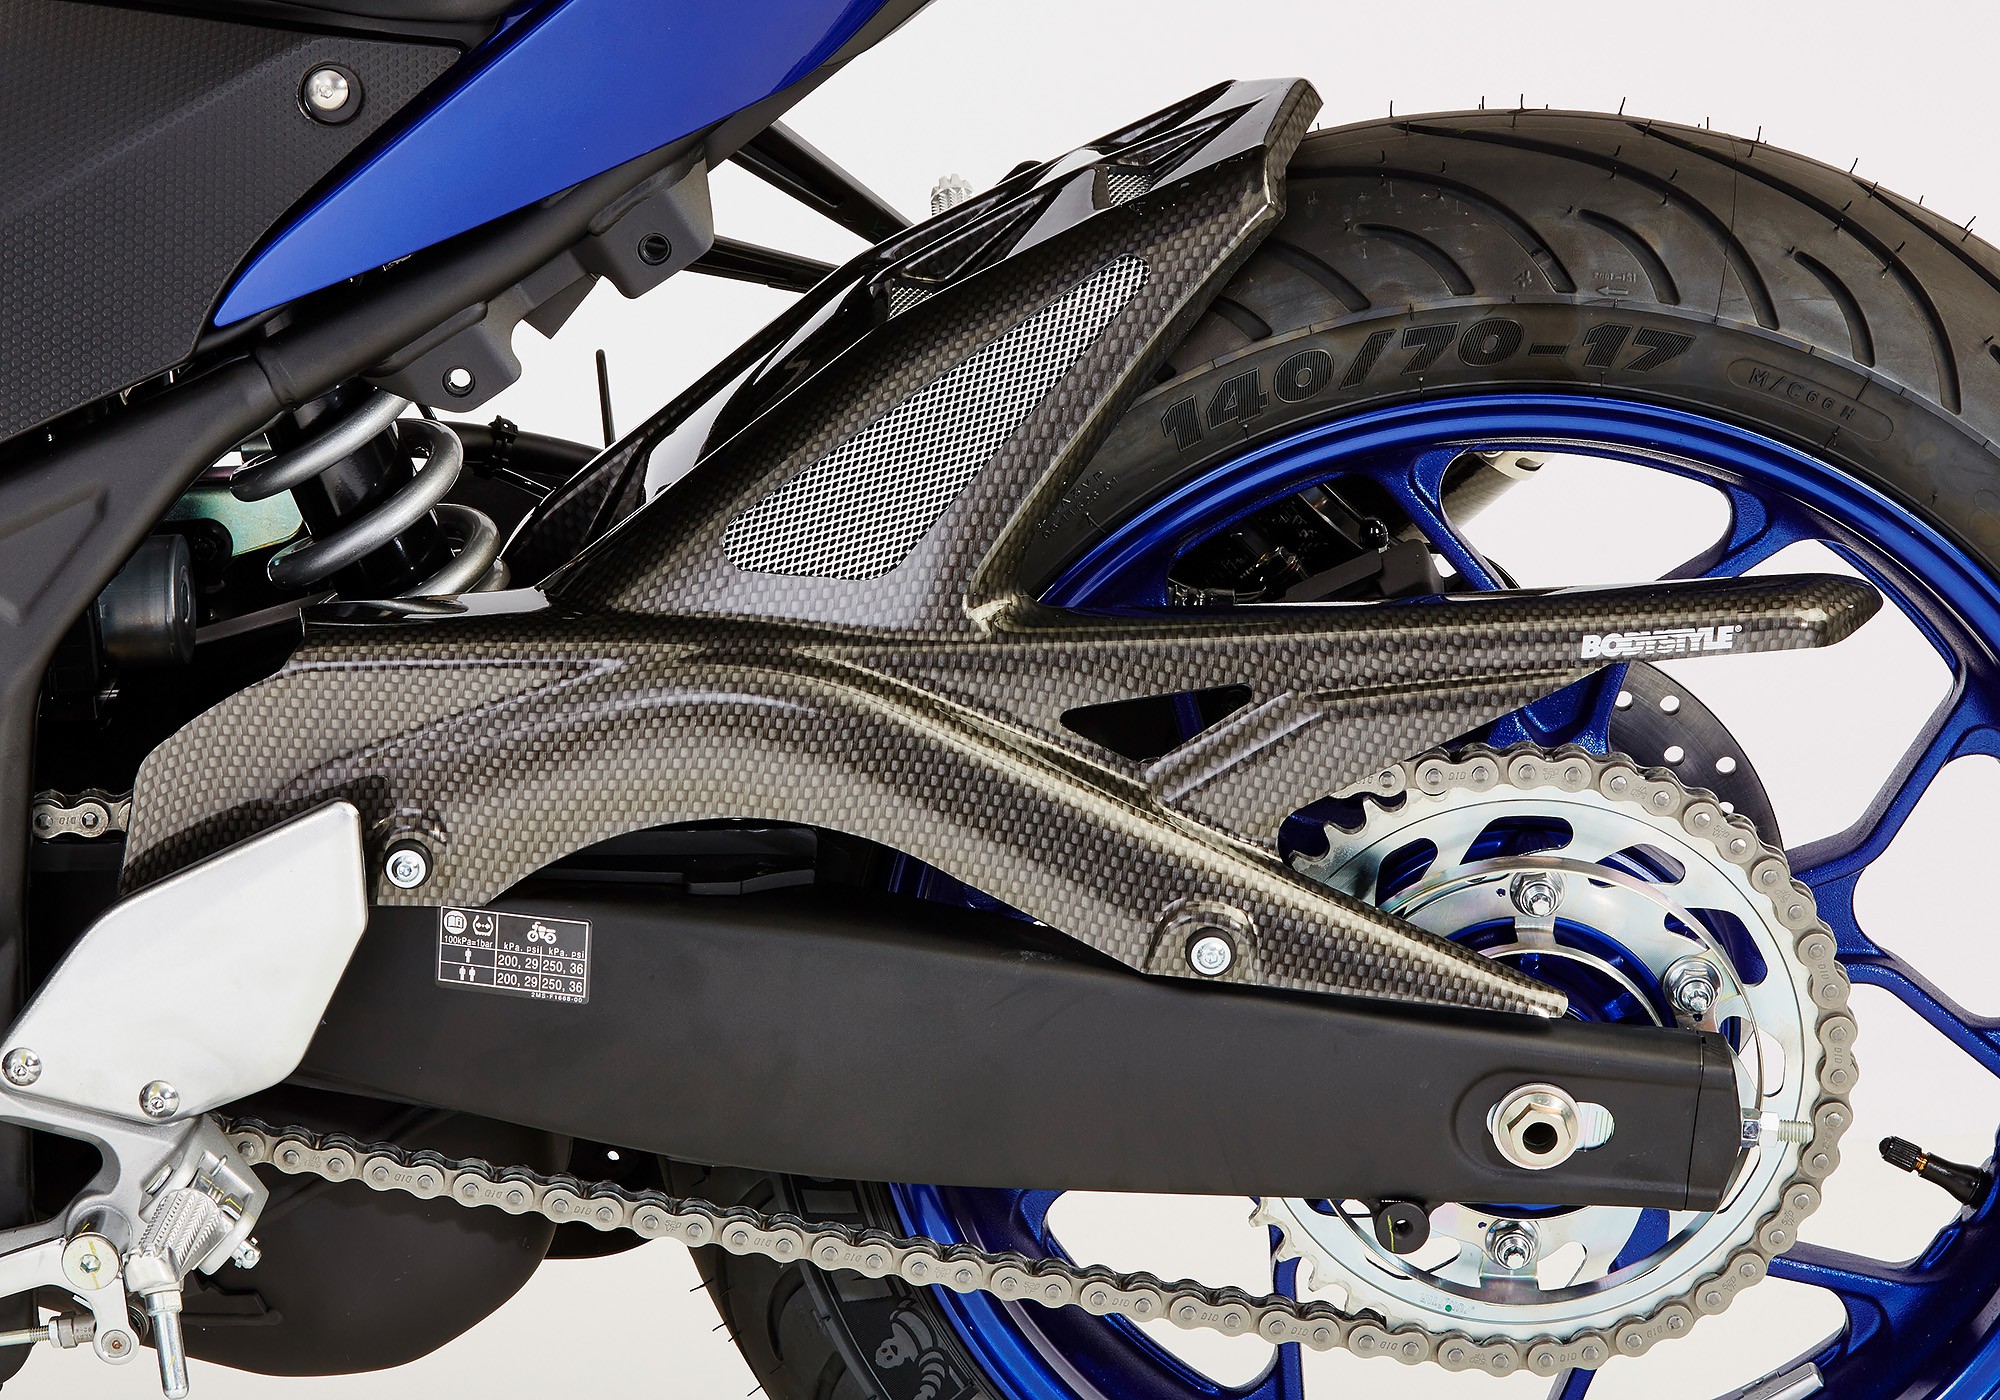 BODYSTYLE Raceline Hinterradabdeckung Carbon Look ABE passt für Yamaha MT-03, YZF-R3